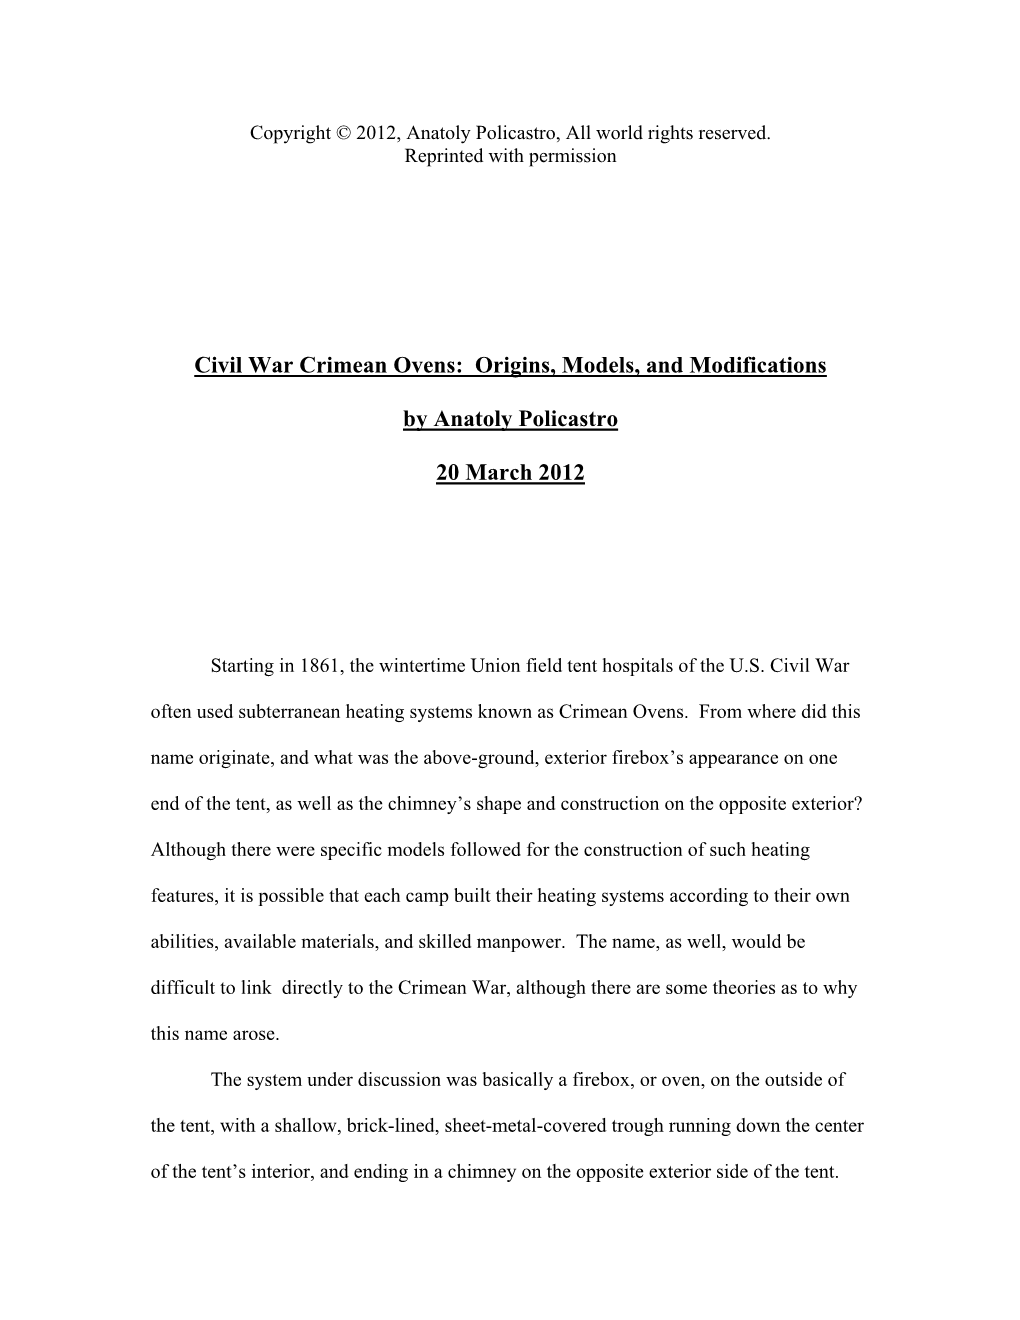 Civil War Crimean Ovens: Origins, Models, and Modifications